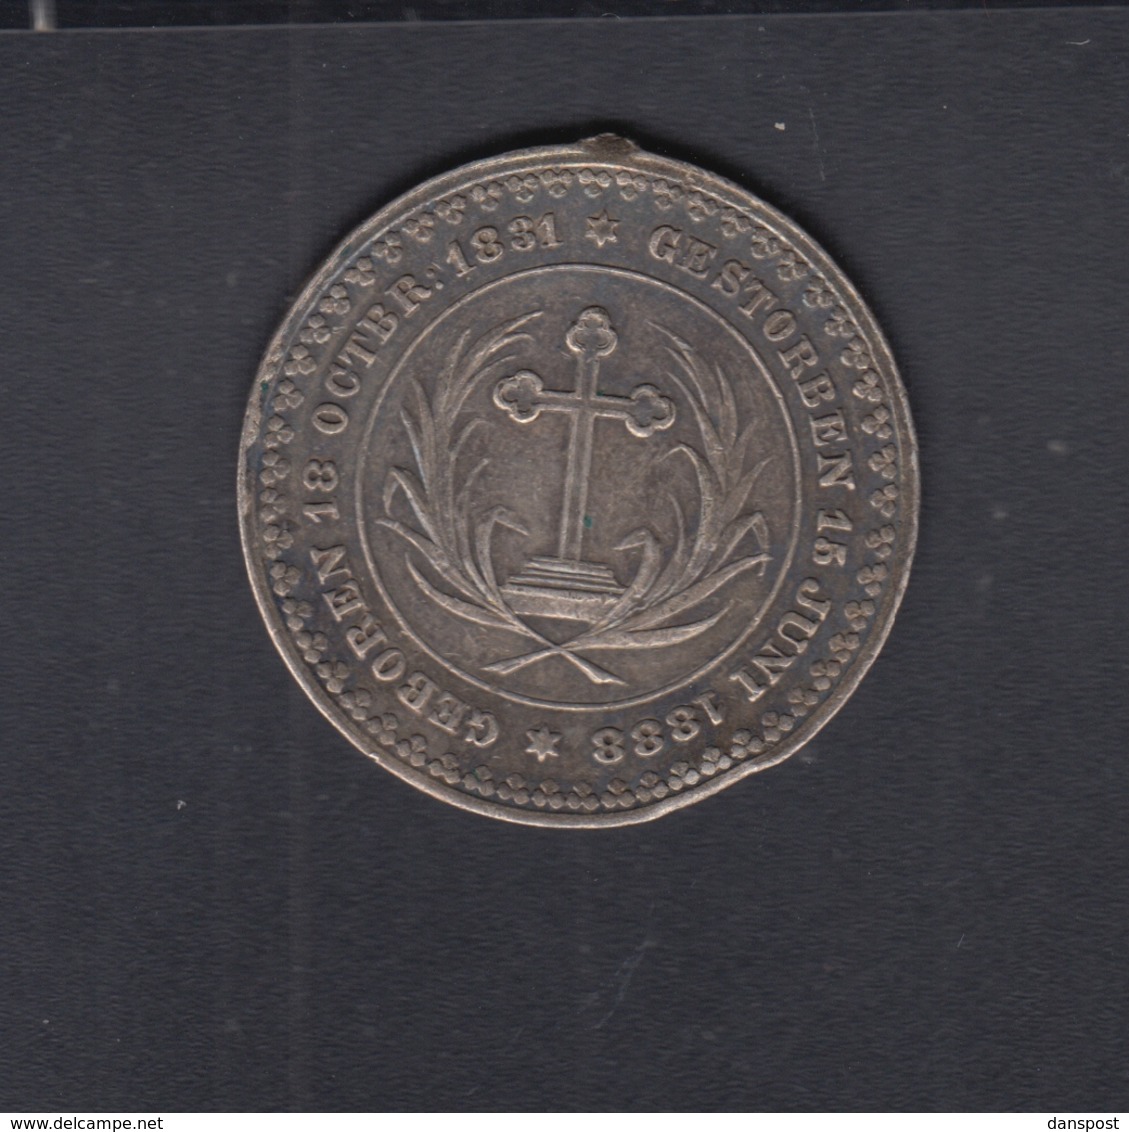 Medaille Friedrich III Beschädigt - Royal/Of Nobility